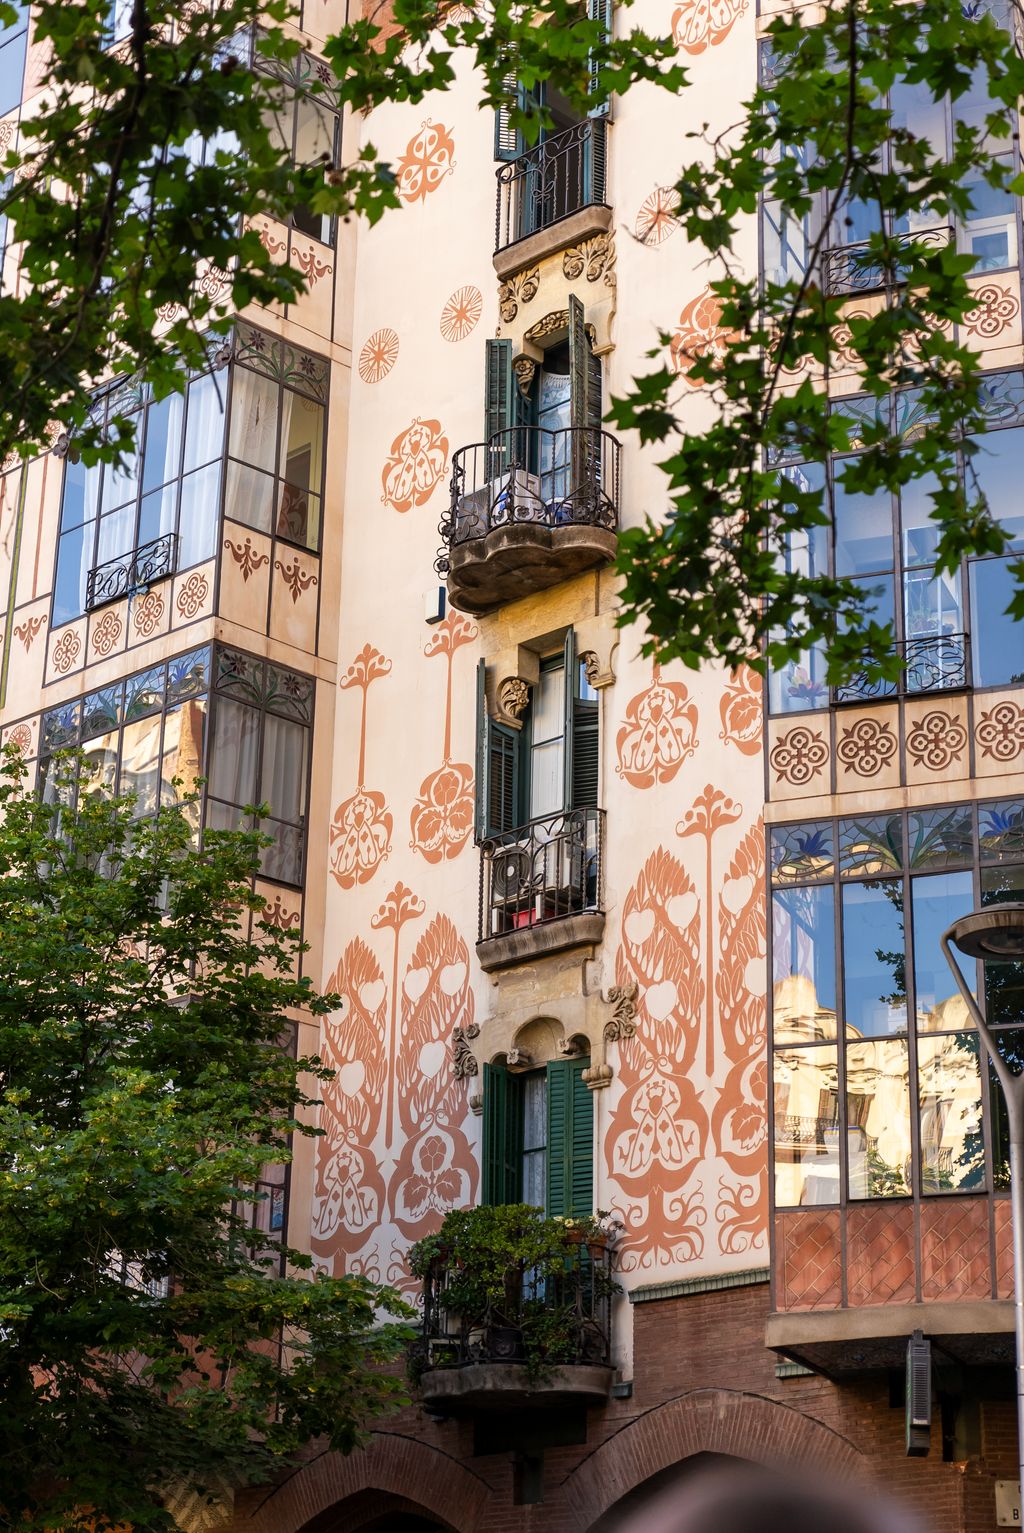 Detall dels esgrafiats de la Casa Llopis Bofill al carrer de València 339, que és un dels edificis visitants a l'itinerari 'La Barcelona esgrafiada'